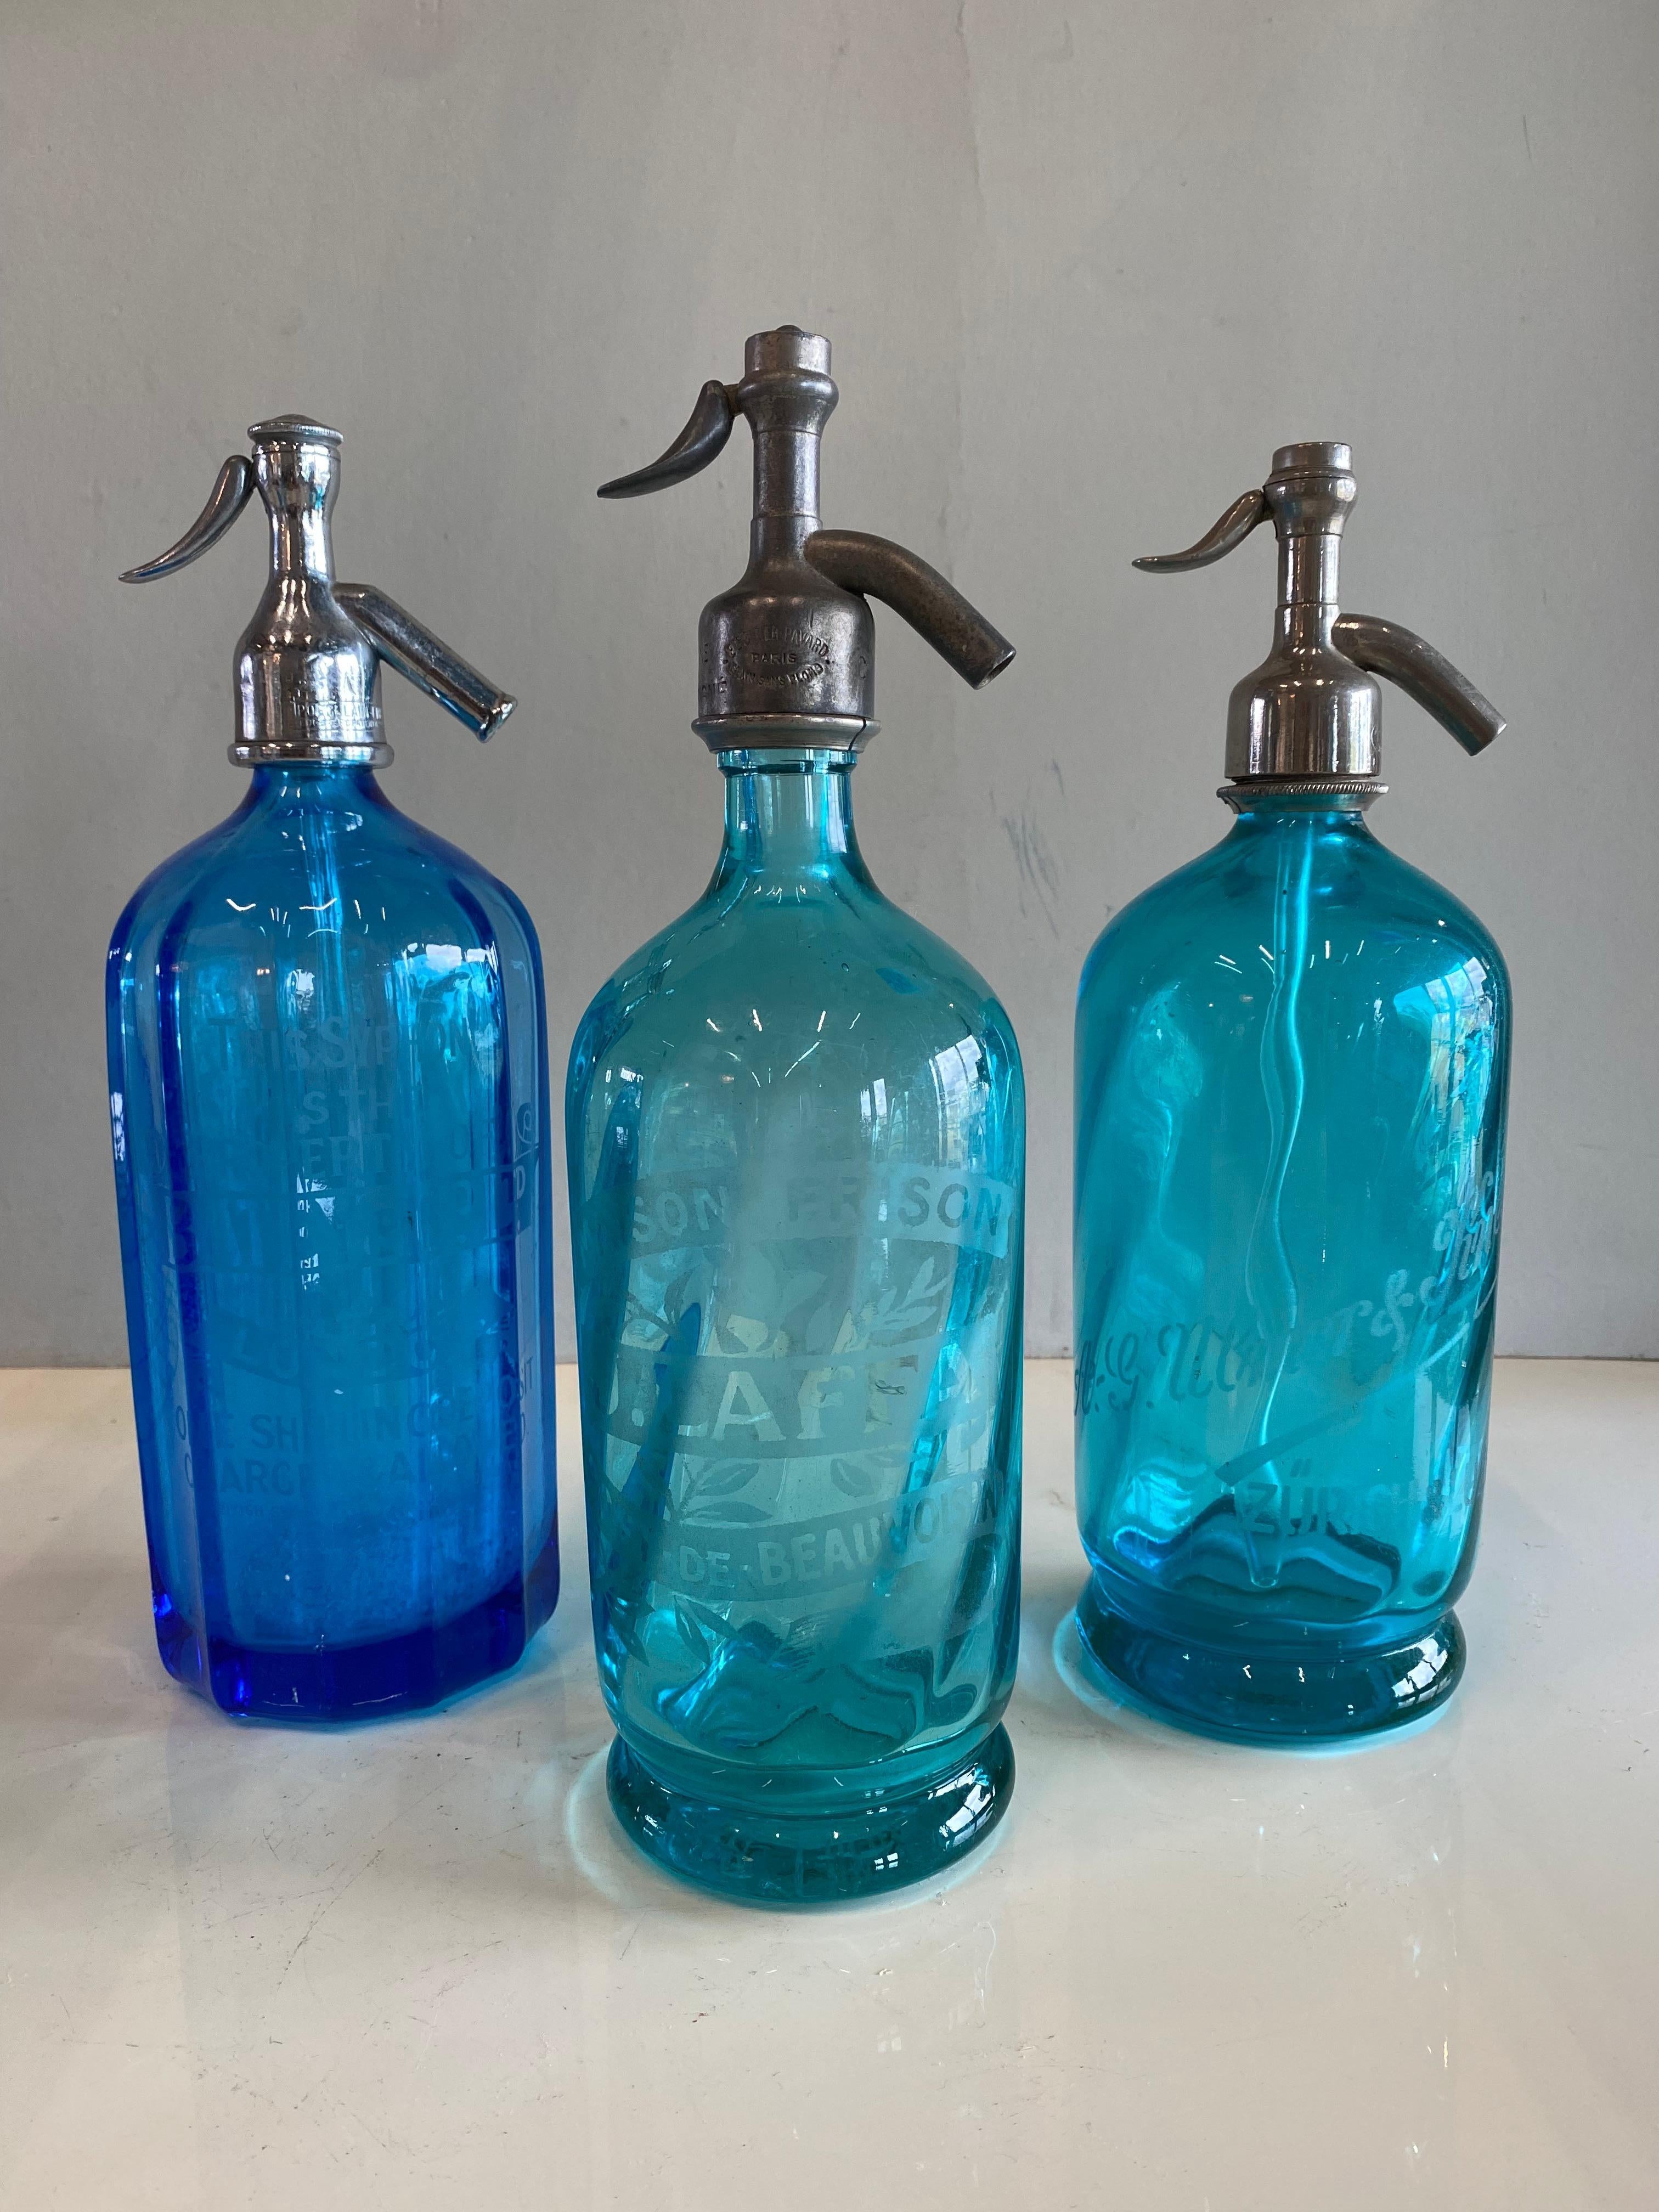 Antike Siphons aus Frankreich aus den Jahren um 1900. Die Flaschen sind aus dickem, schwerem blauen und türkisfarbenen Glas und die Verschlüsse aus Zinn gefertigt. 
Auf dem Deckel der blauen Flasche sind das Wort und die Zahlenfolge 